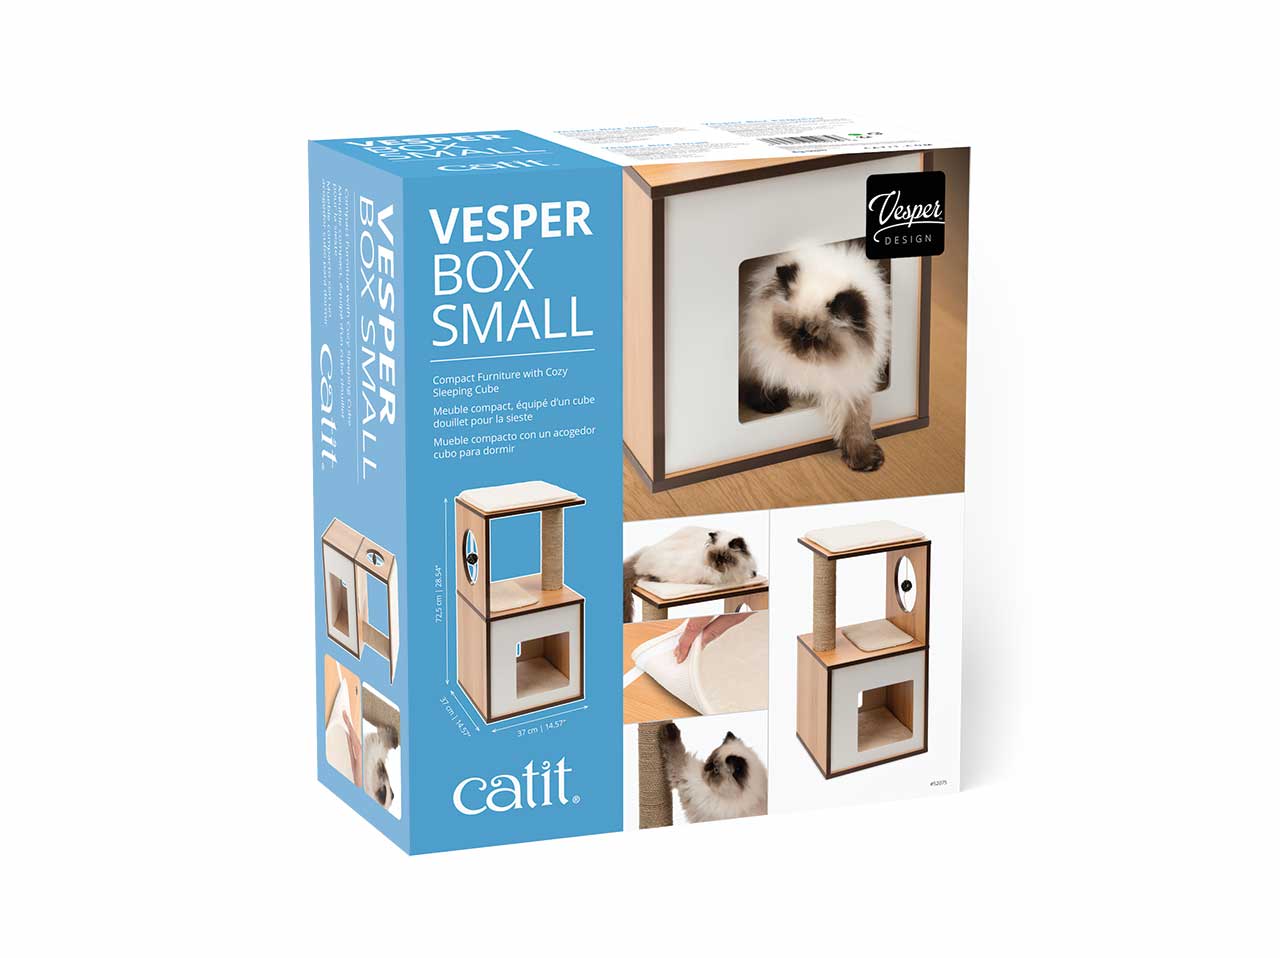 Vesper Box Small packaging